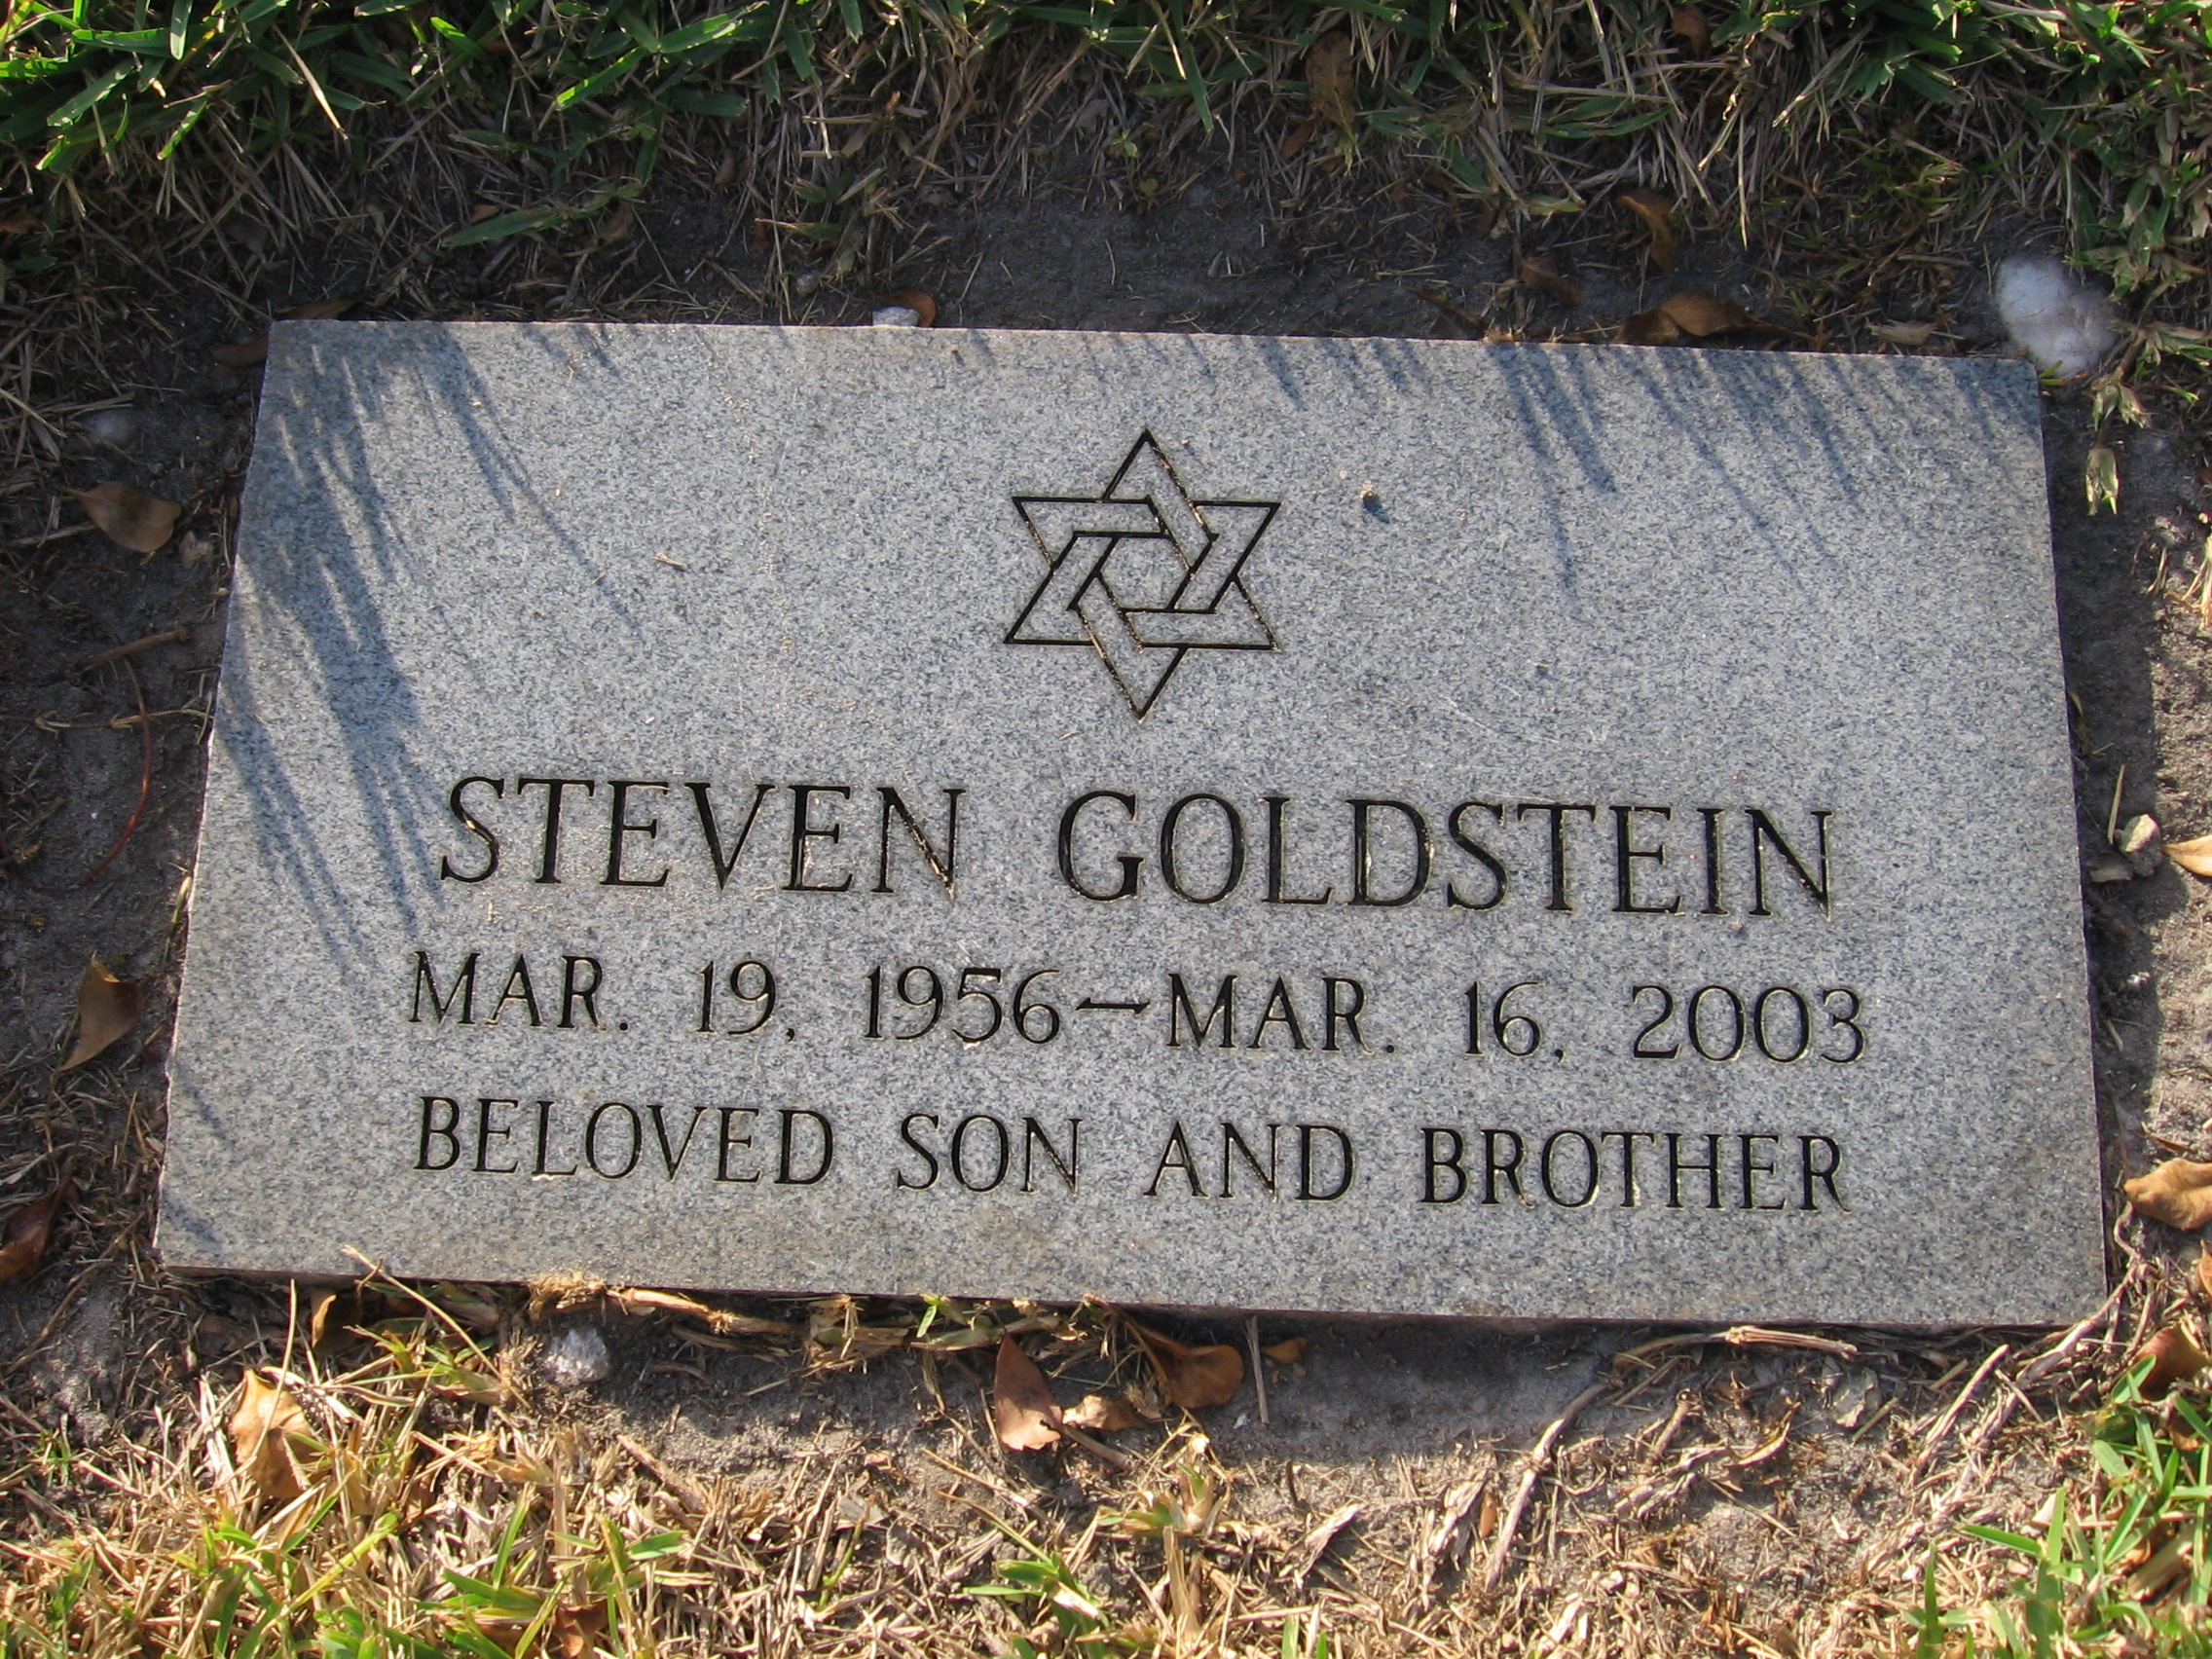 Steven Goldstein